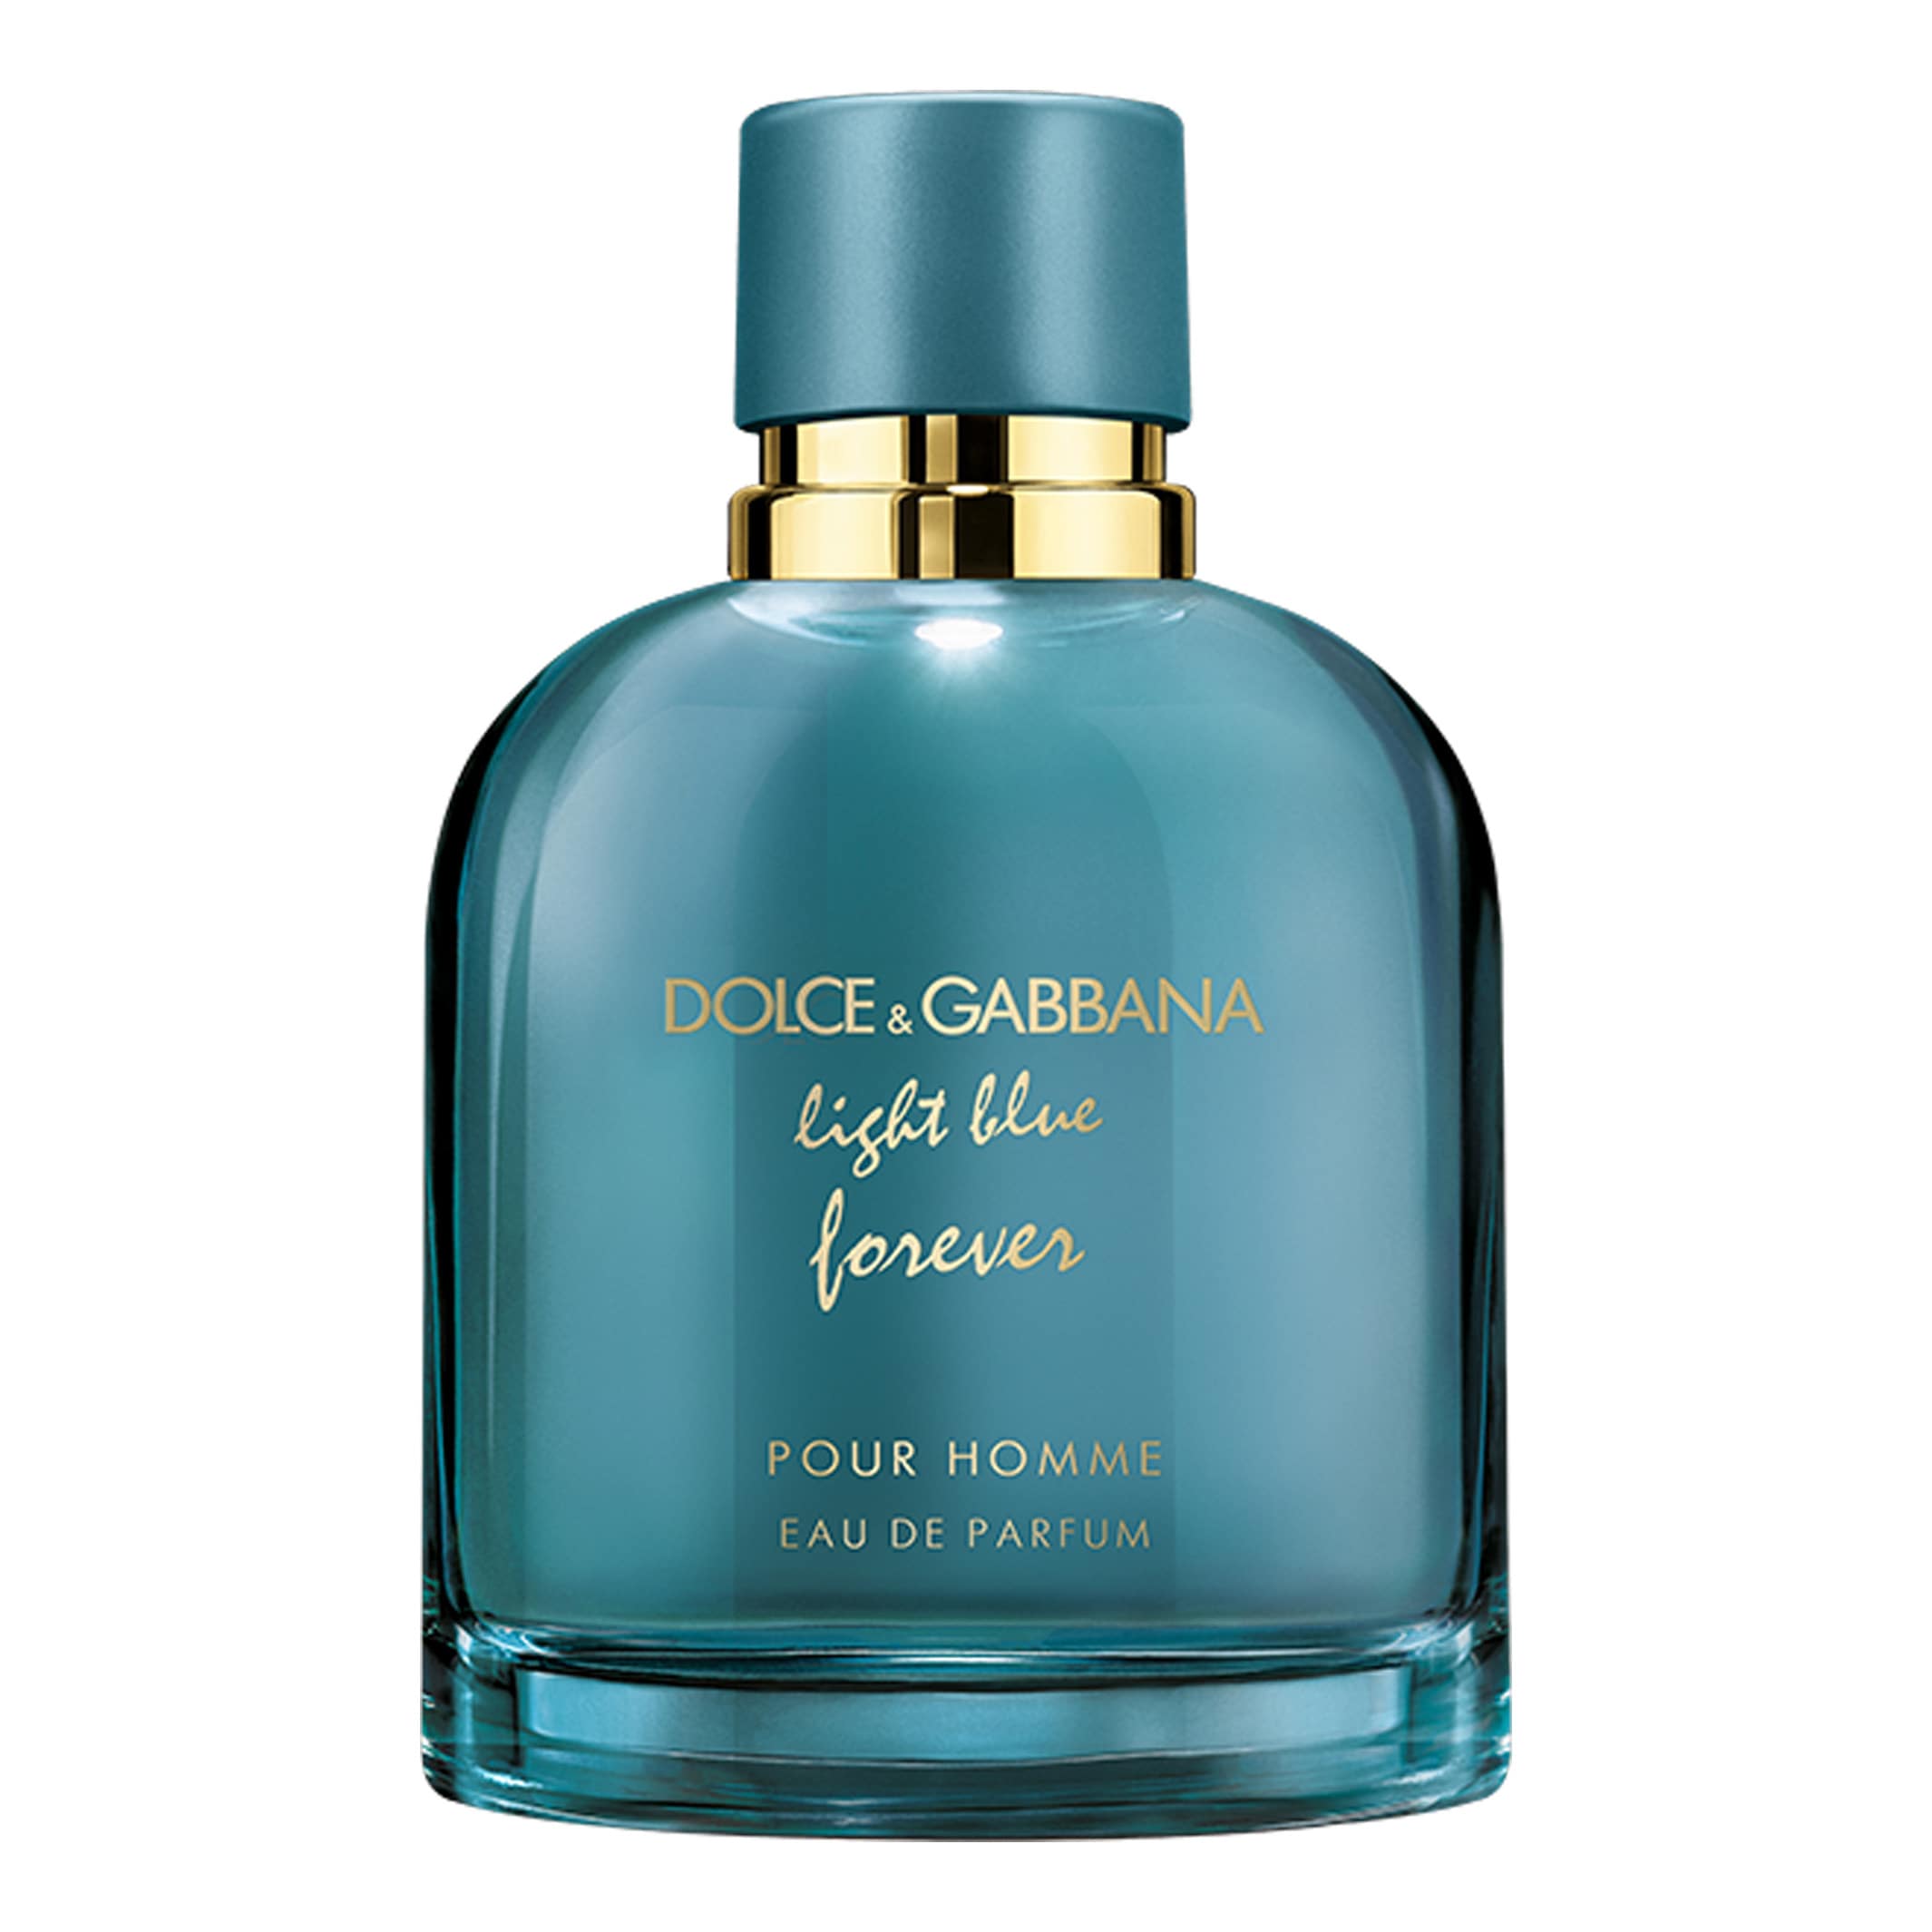 سمپل/دکانت عطر ادکلن دولچه گابانا لایت بلو فوراور پور هوم | Dolce & Gabbana Light Blue Forever pour Homme